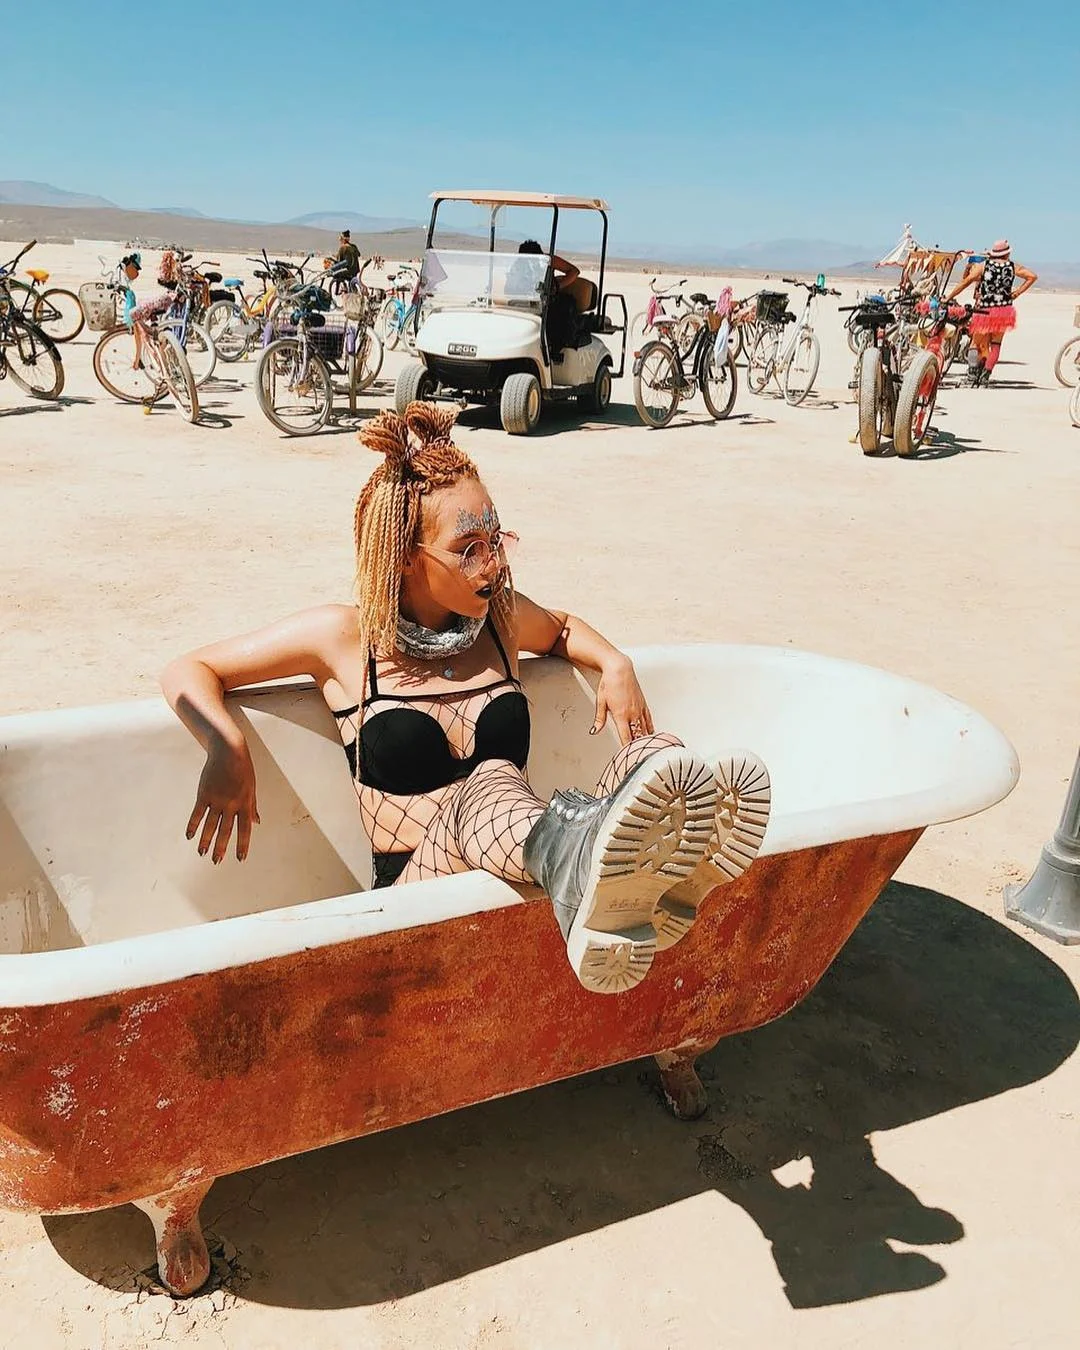 Полуголые тела, безумные костюмы и невероятные инсталляции фестиваля Burning Man-2018 - фото 400807